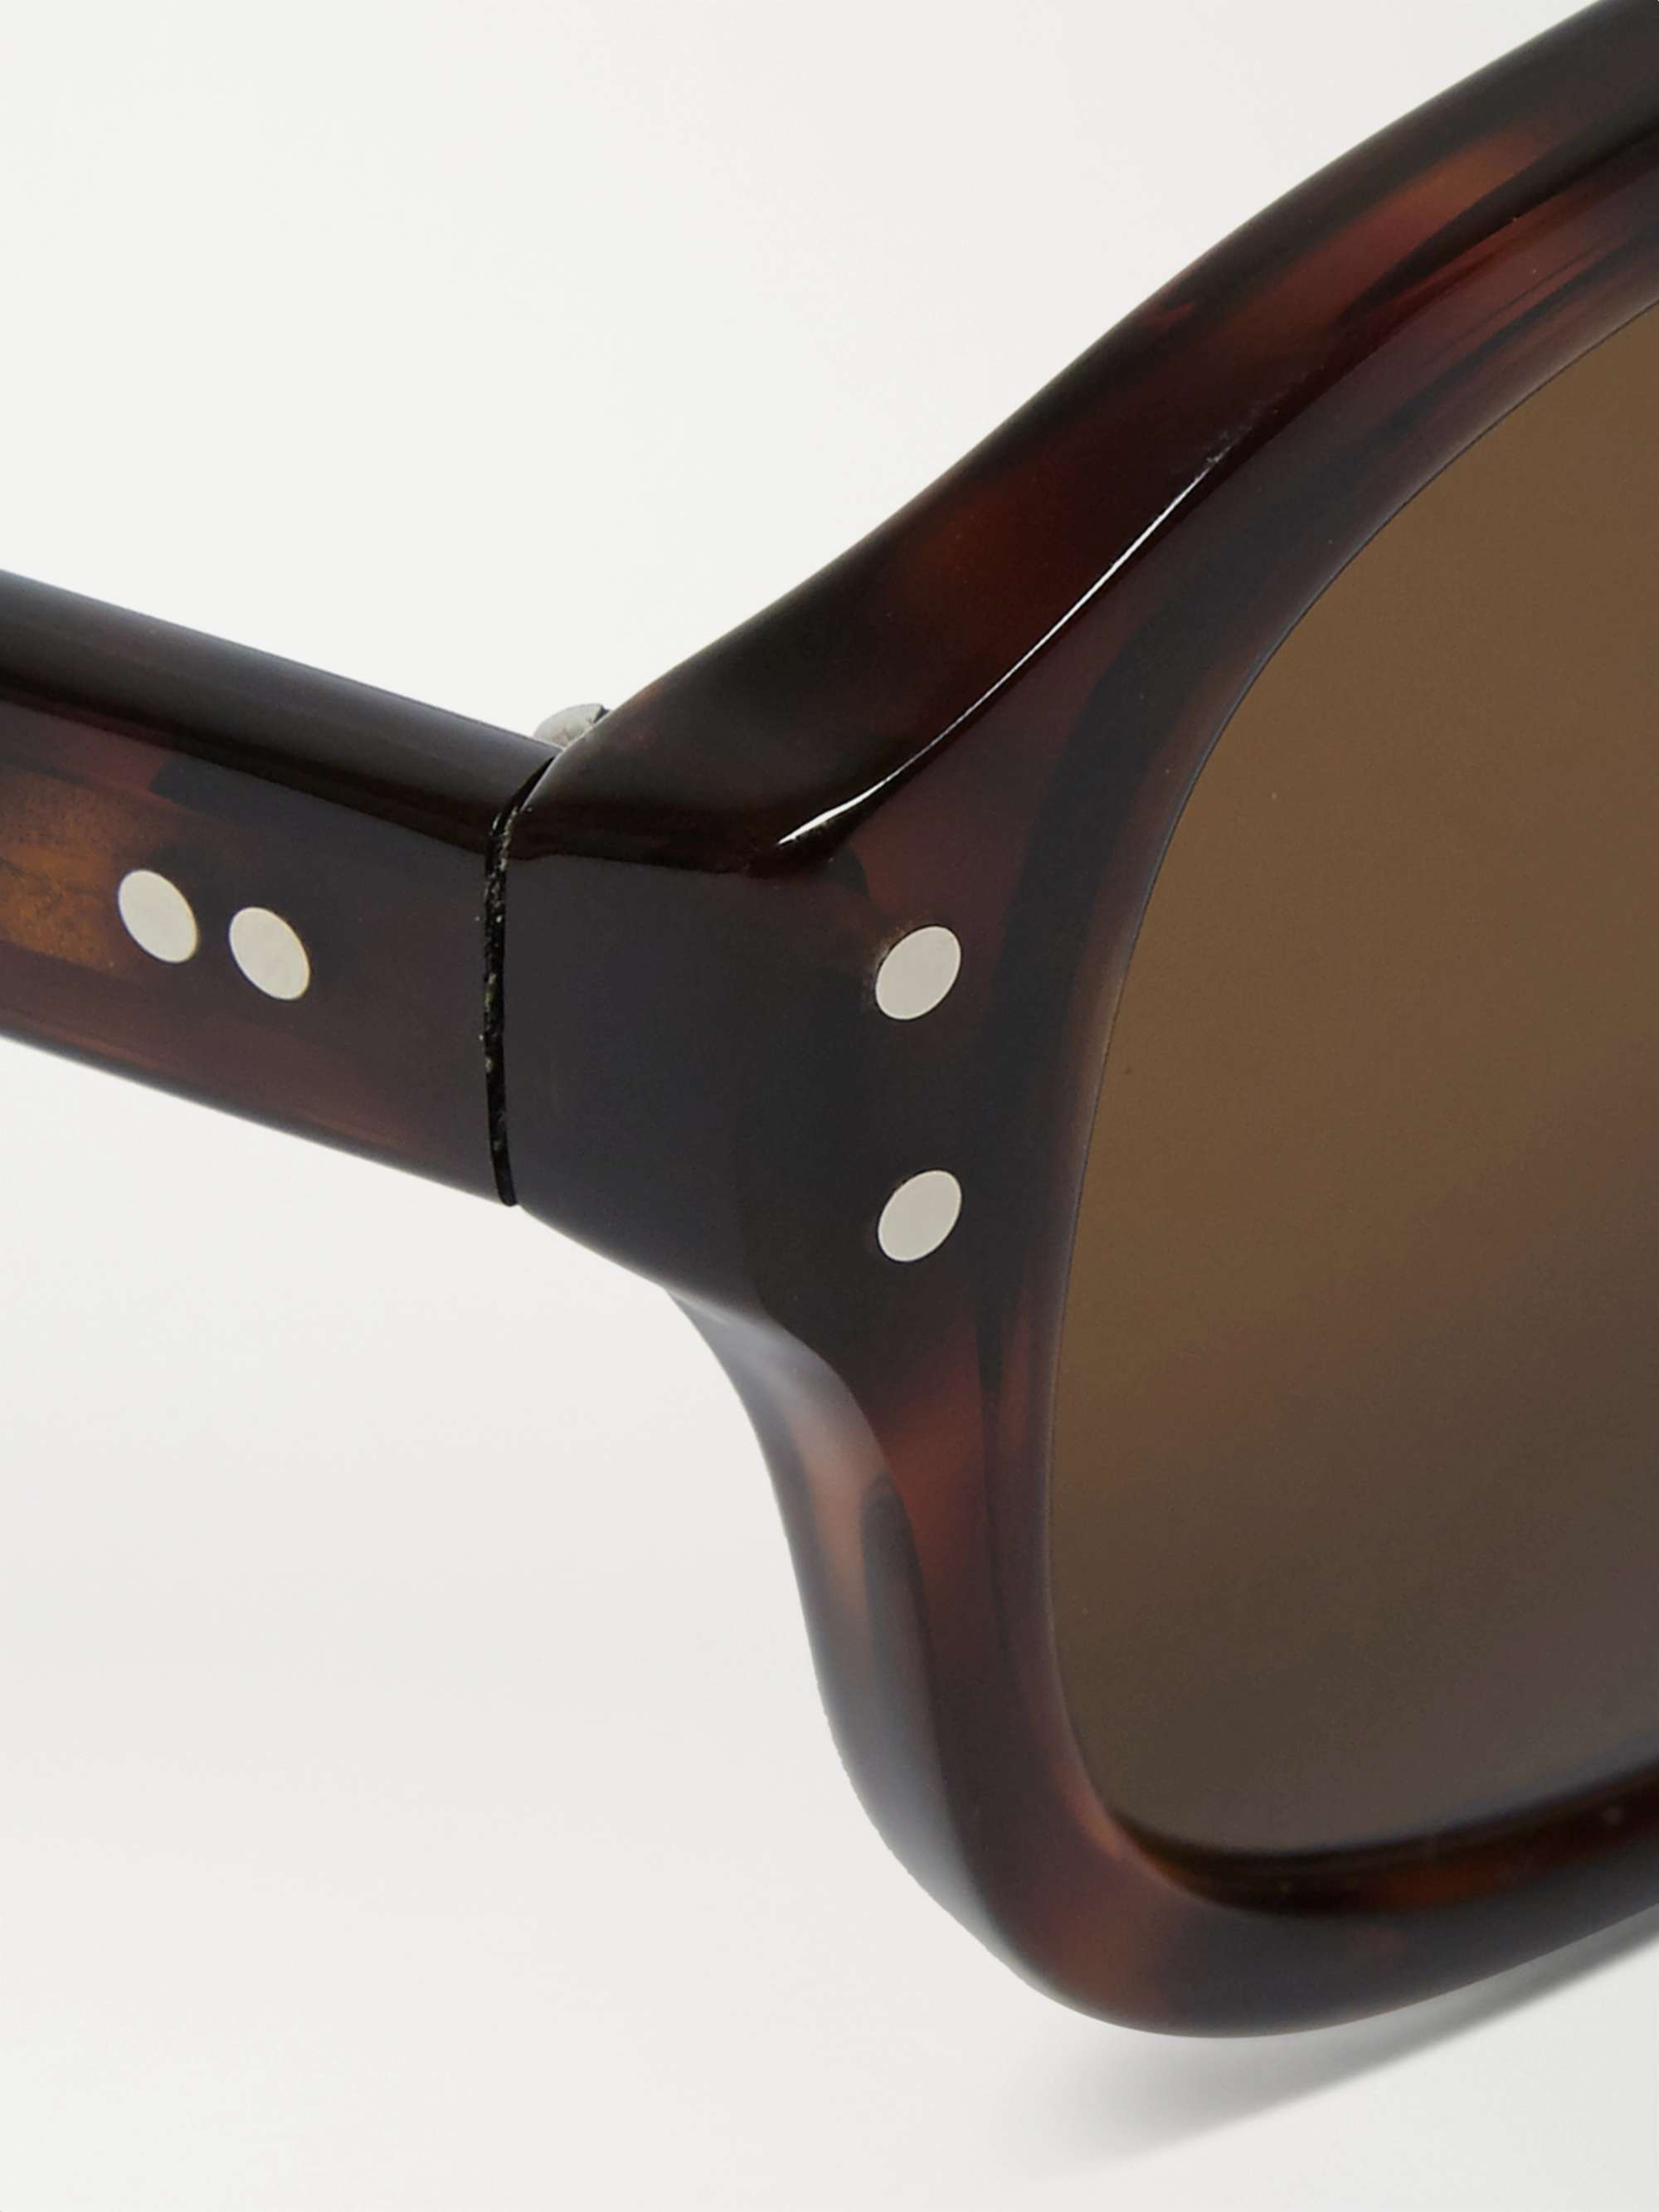 KINGSMAN + Cutler and Gross Square-Frame Tortoiseshell Acetate Sunglasses